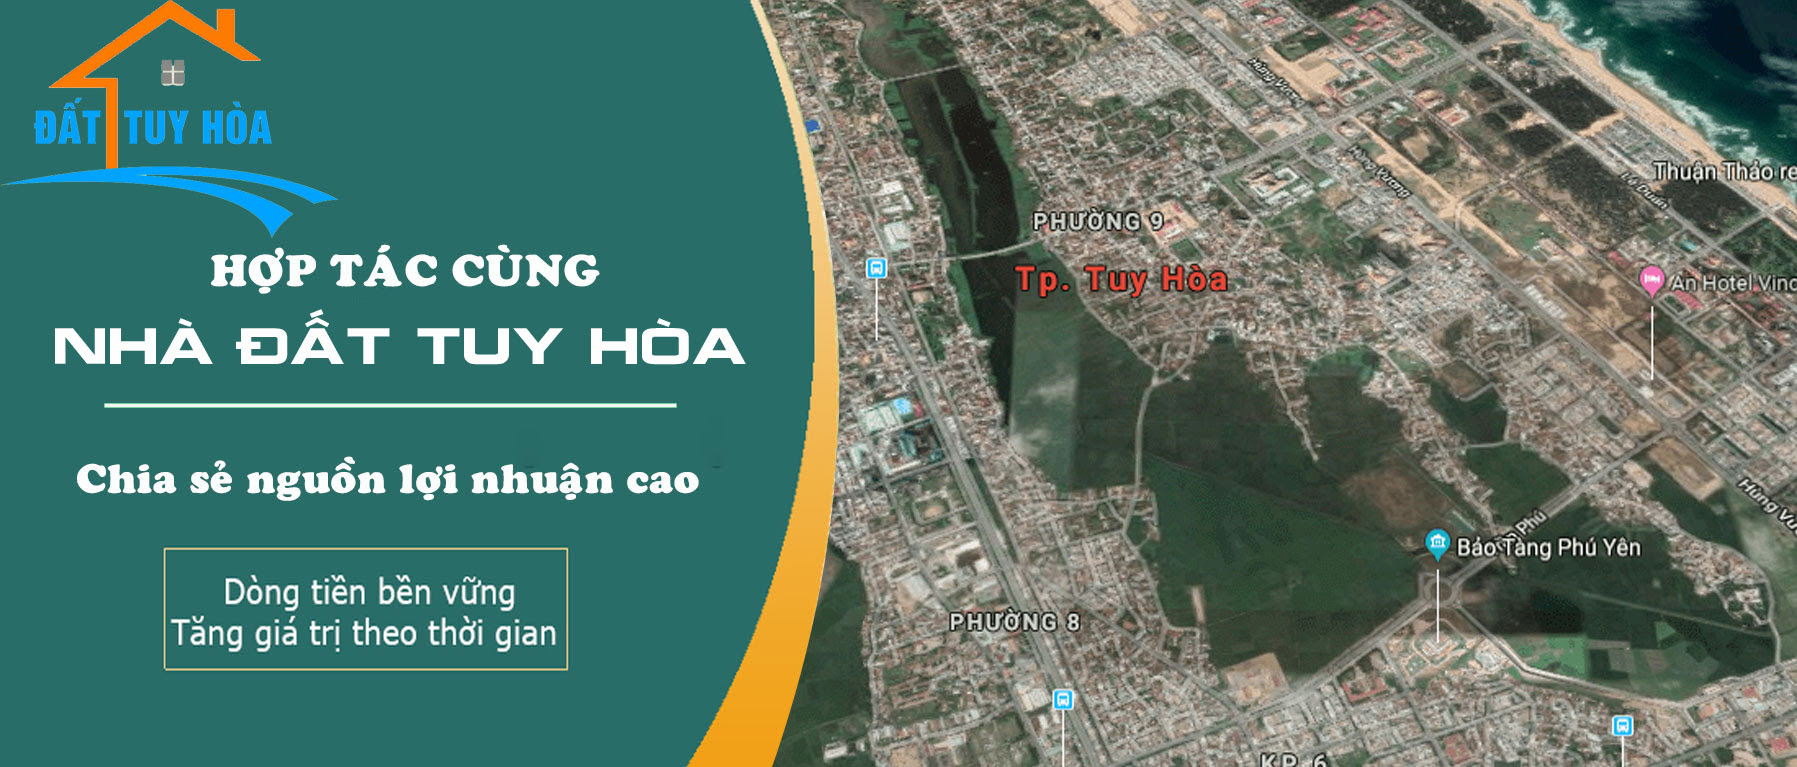 Nhà đất Tuy Hòa Phú Yên - 1